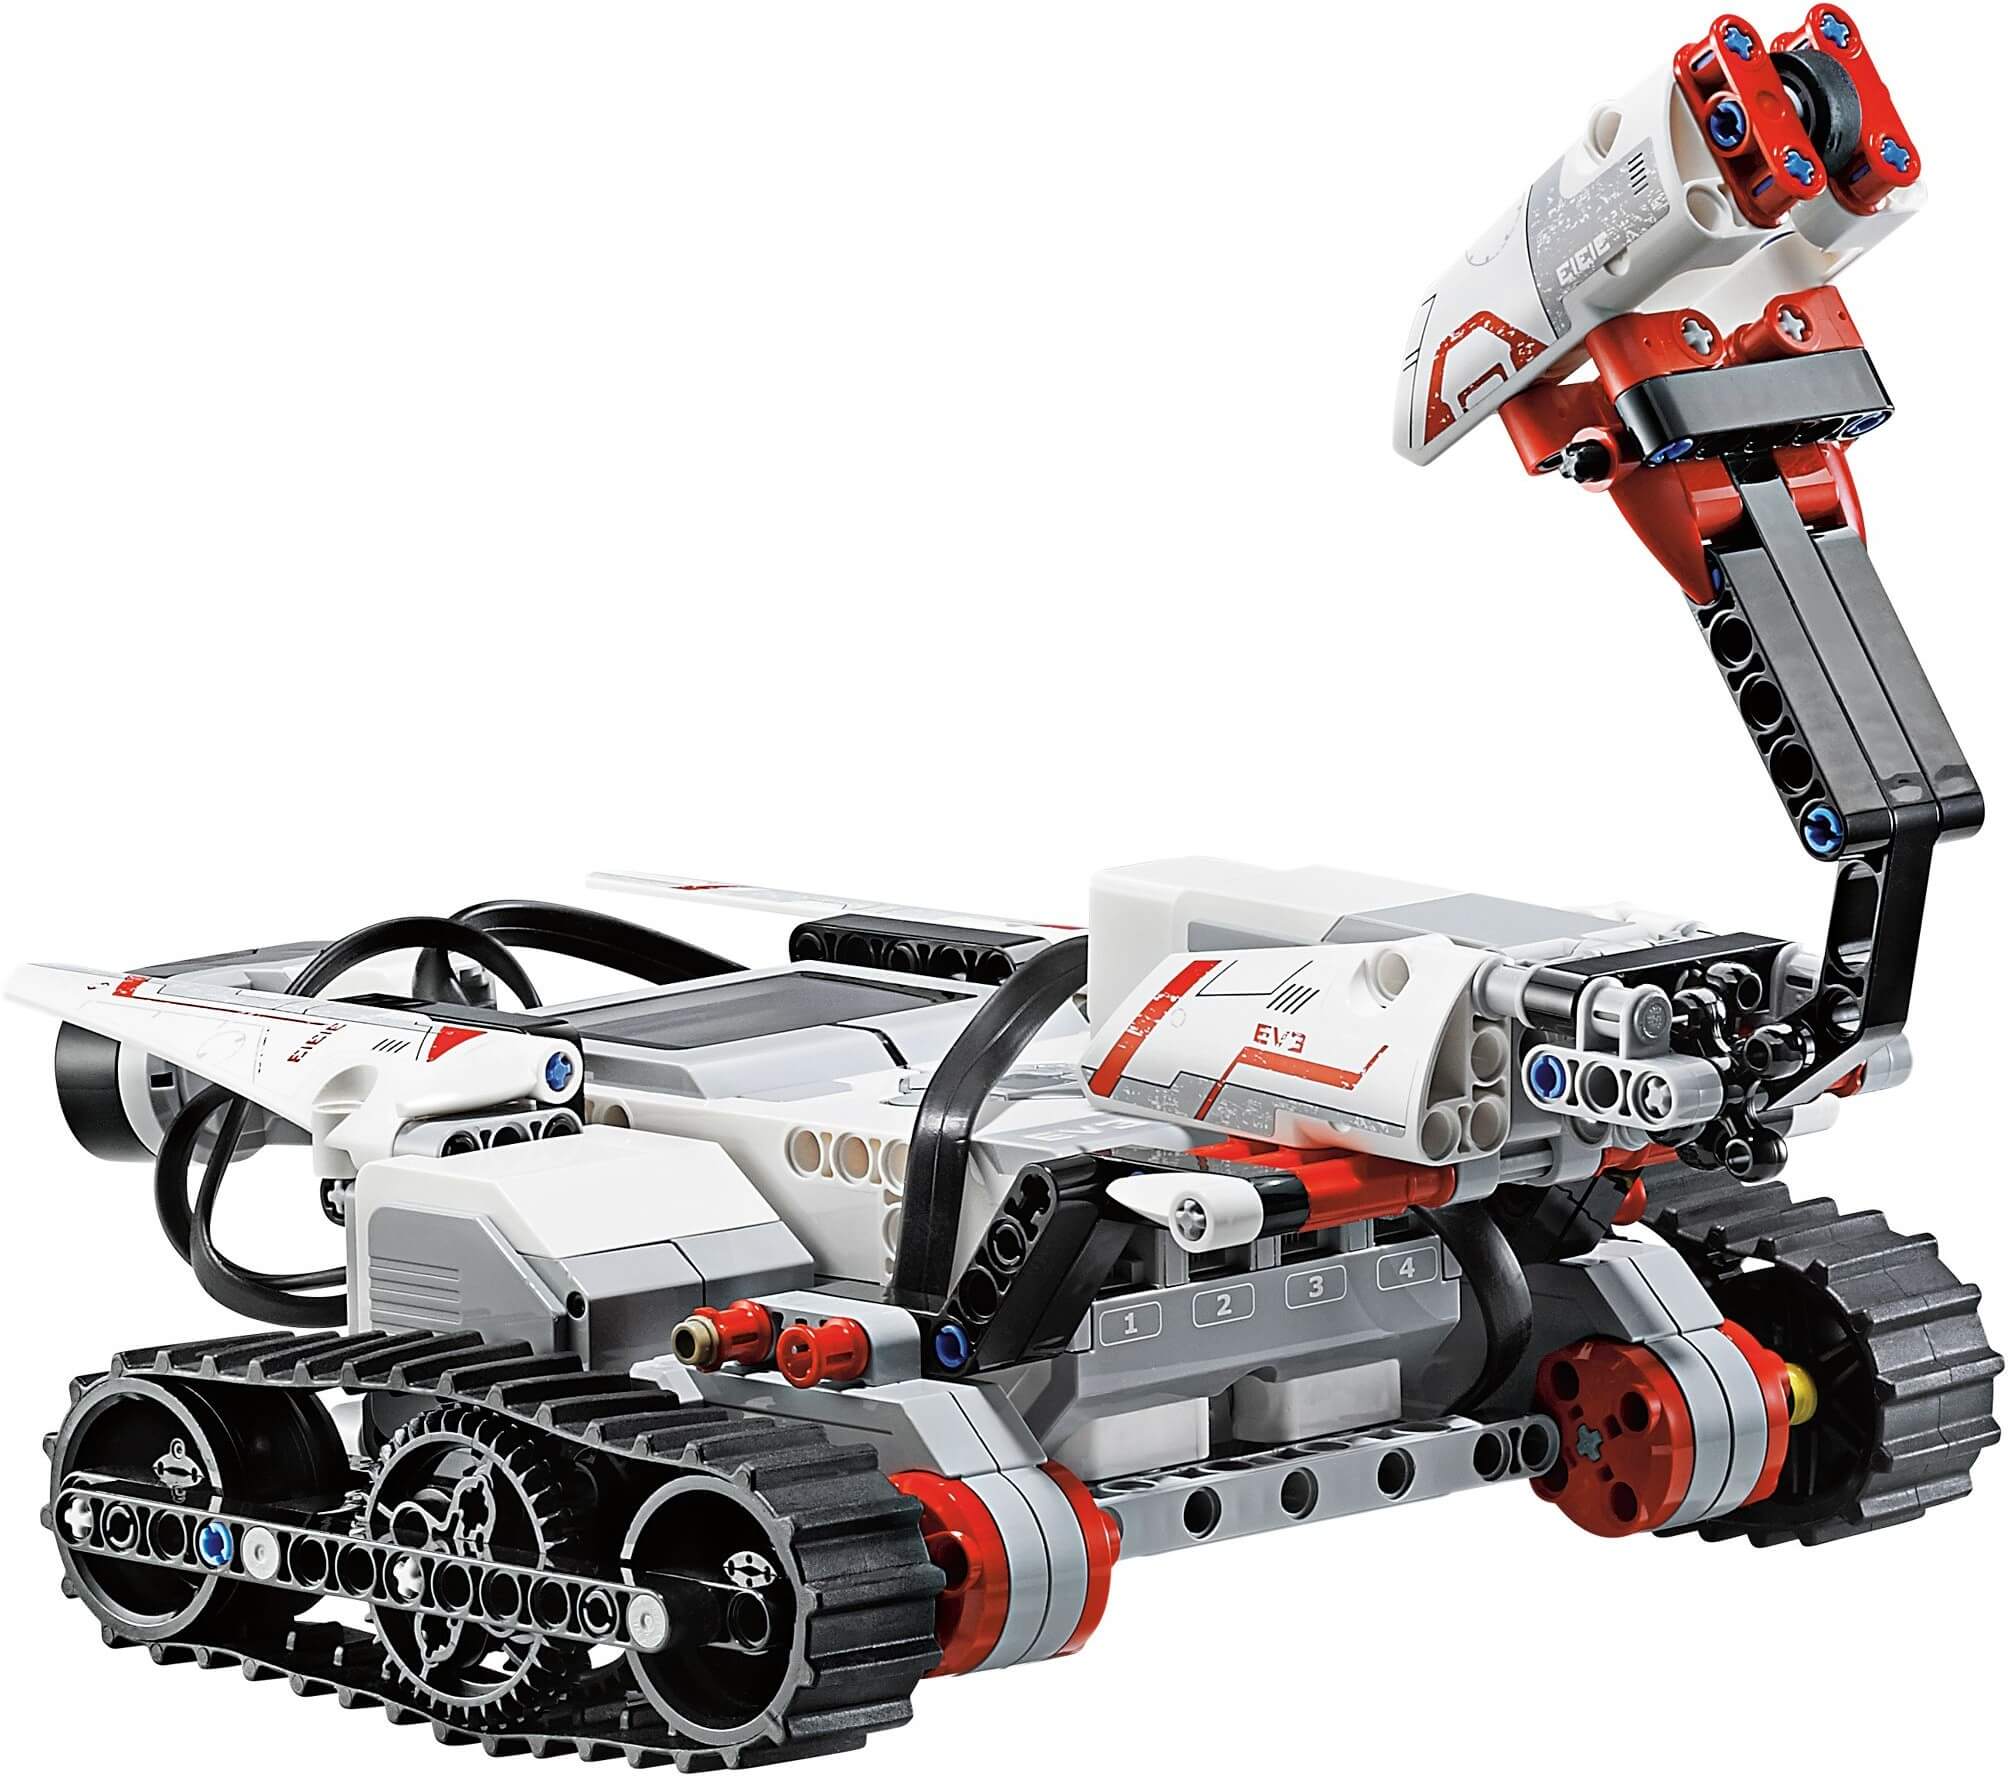 Hình nền  mô hình Robot không gian Chiến tranh LEGO Mech Công nghệ  Đồ chơi máy móc Krieger Tương lai cứng Máy bay phản lực bộ đồ đóng  gói sự sáng